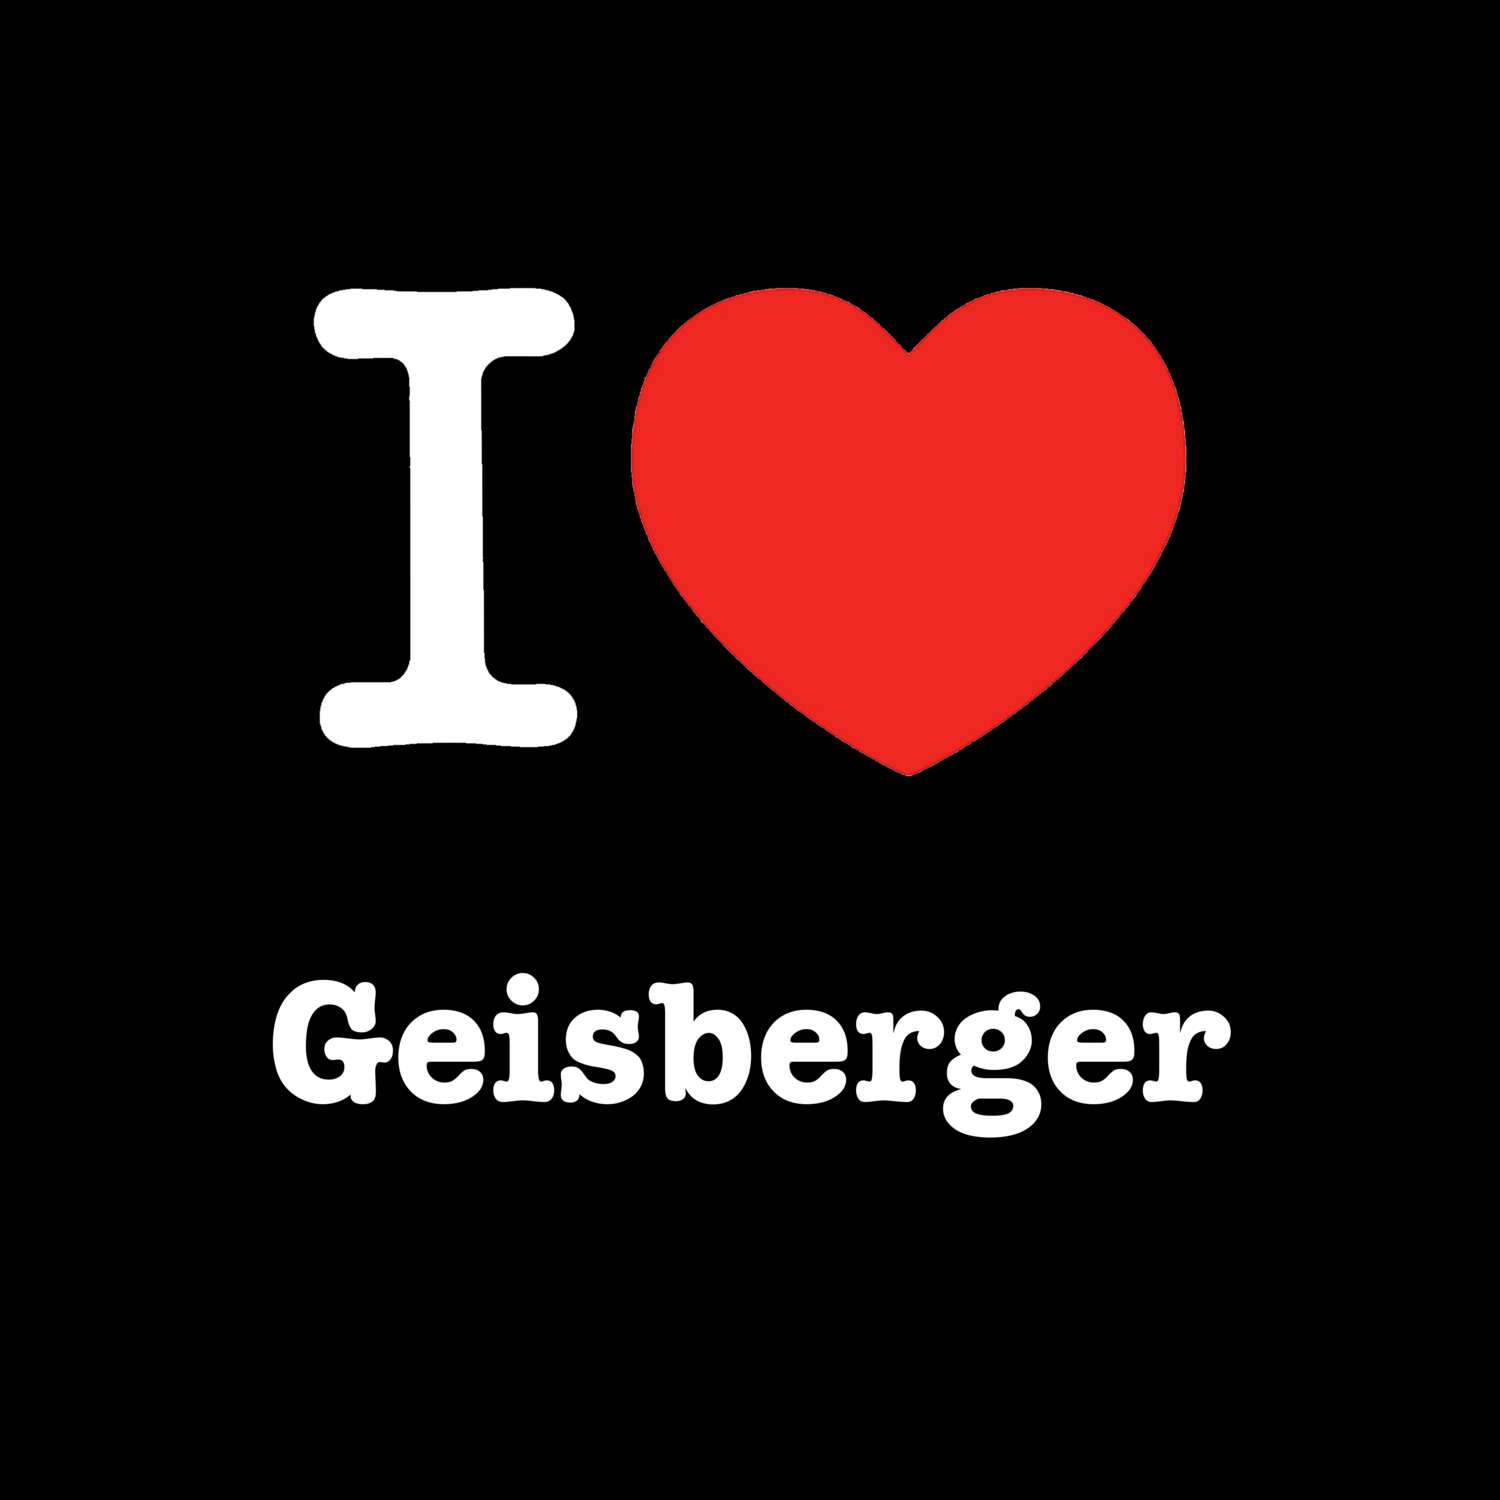 Geisberger T-Shirt »I love«